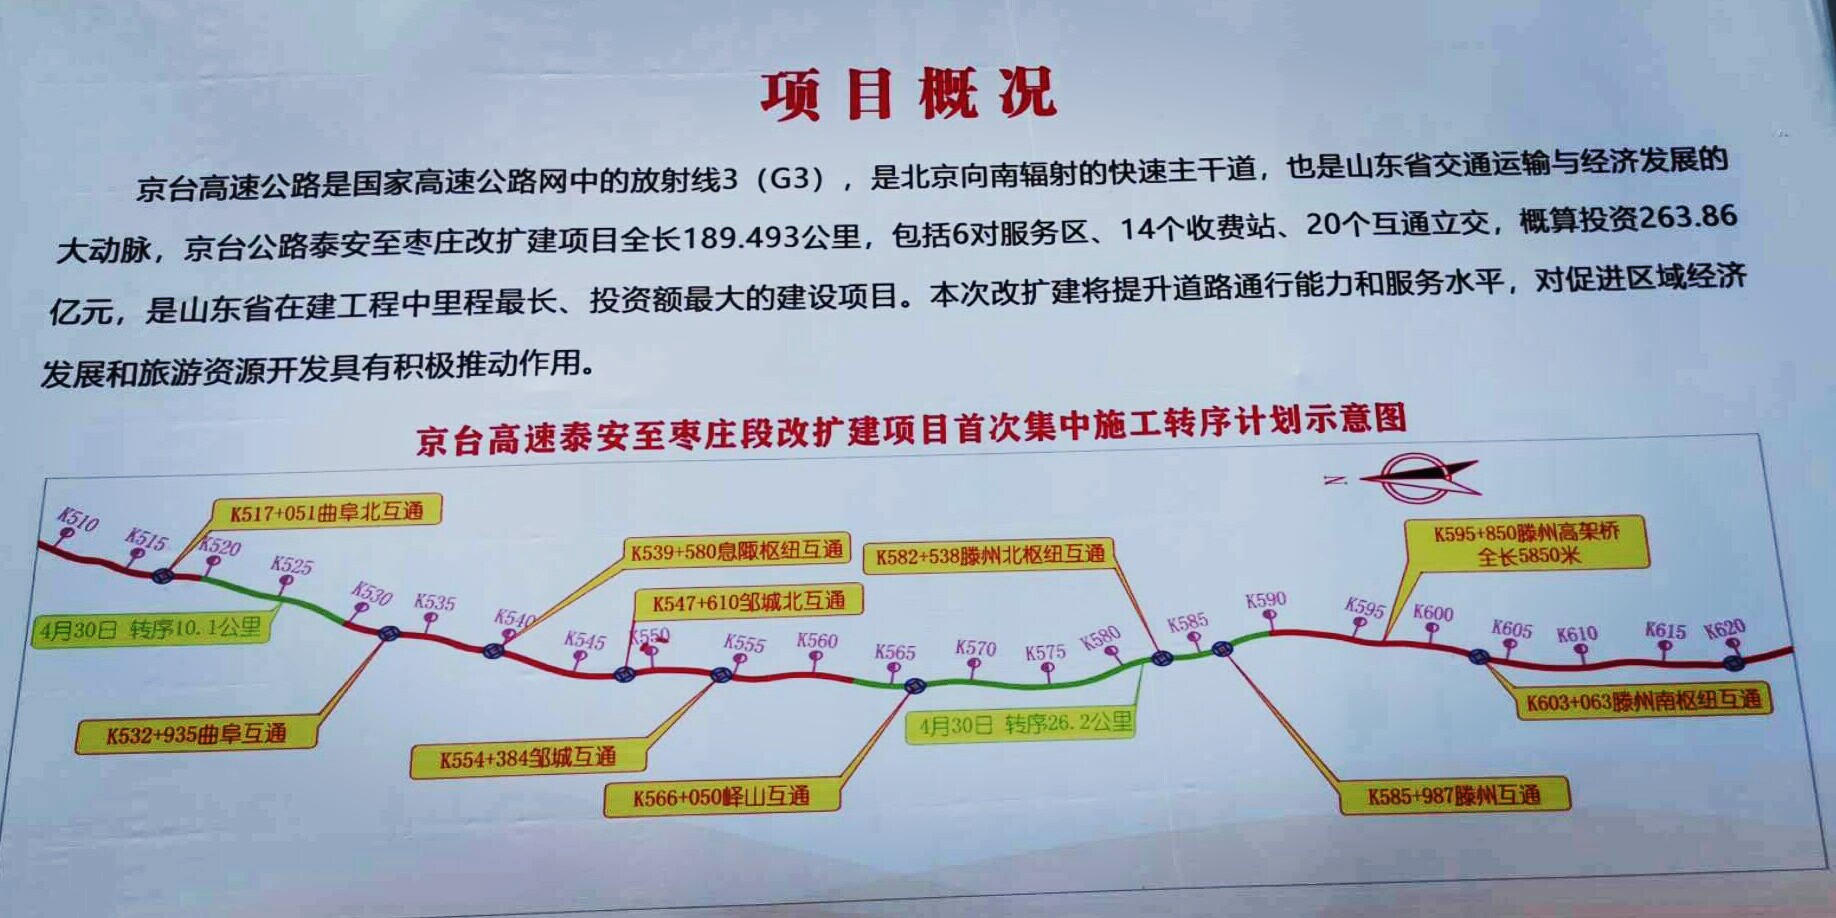 京台高速改扩建项目泰安到枣庄段完成首次集中施工转序 五一假期正常